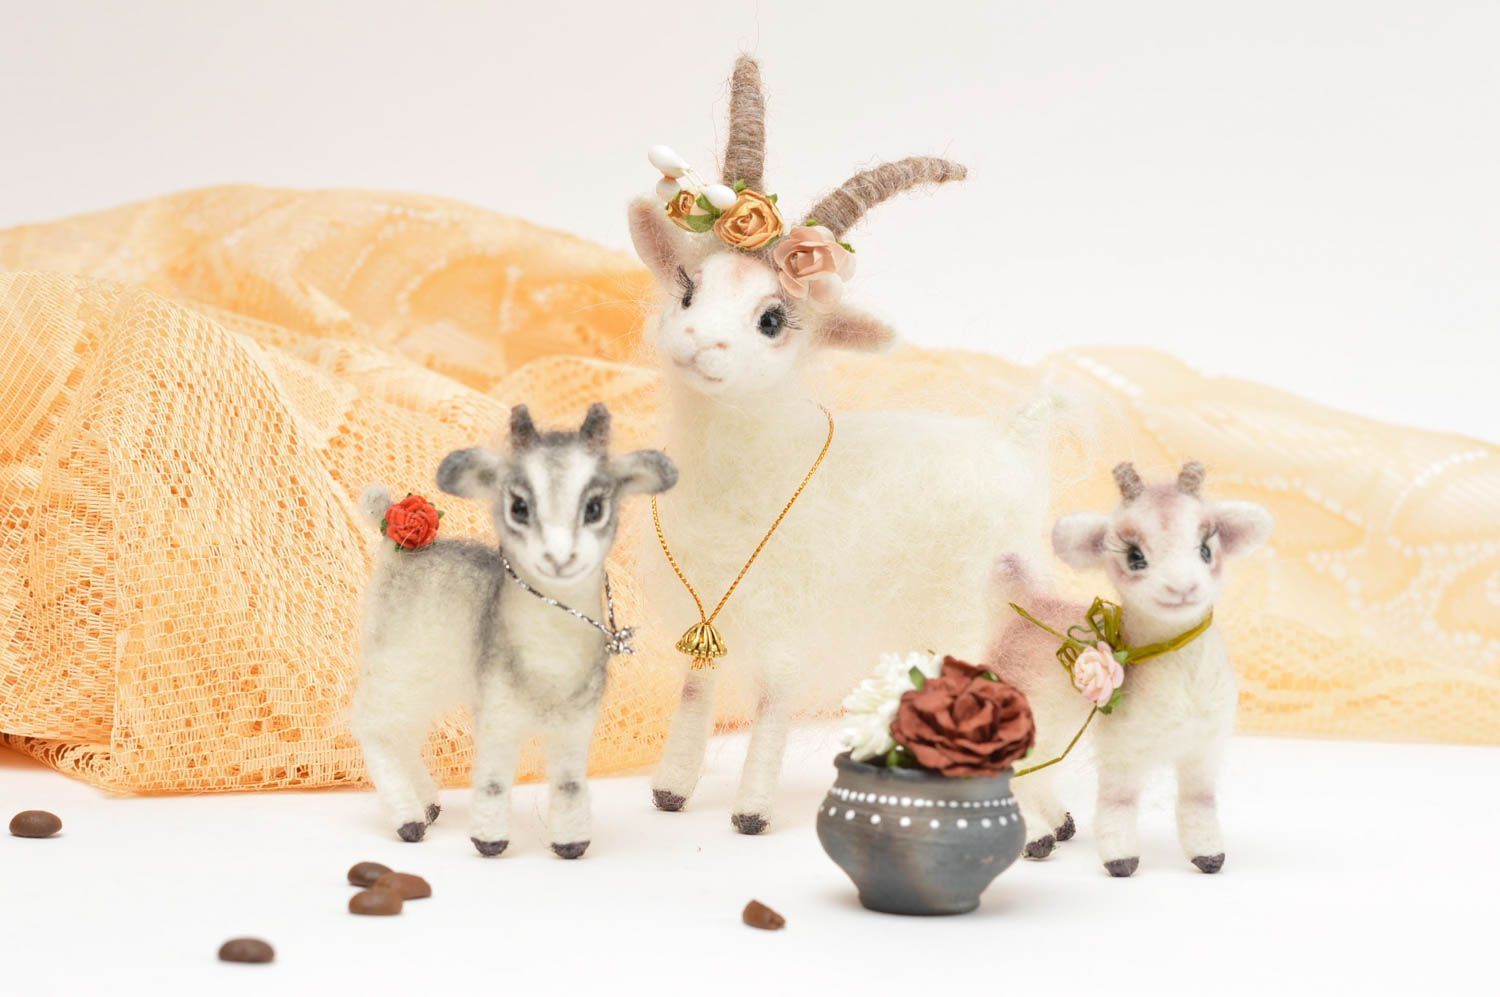 Handmade Plüsch Ziege Stoff Kuscheltiere Geschenk für Kinder gefilzt schön foto 6